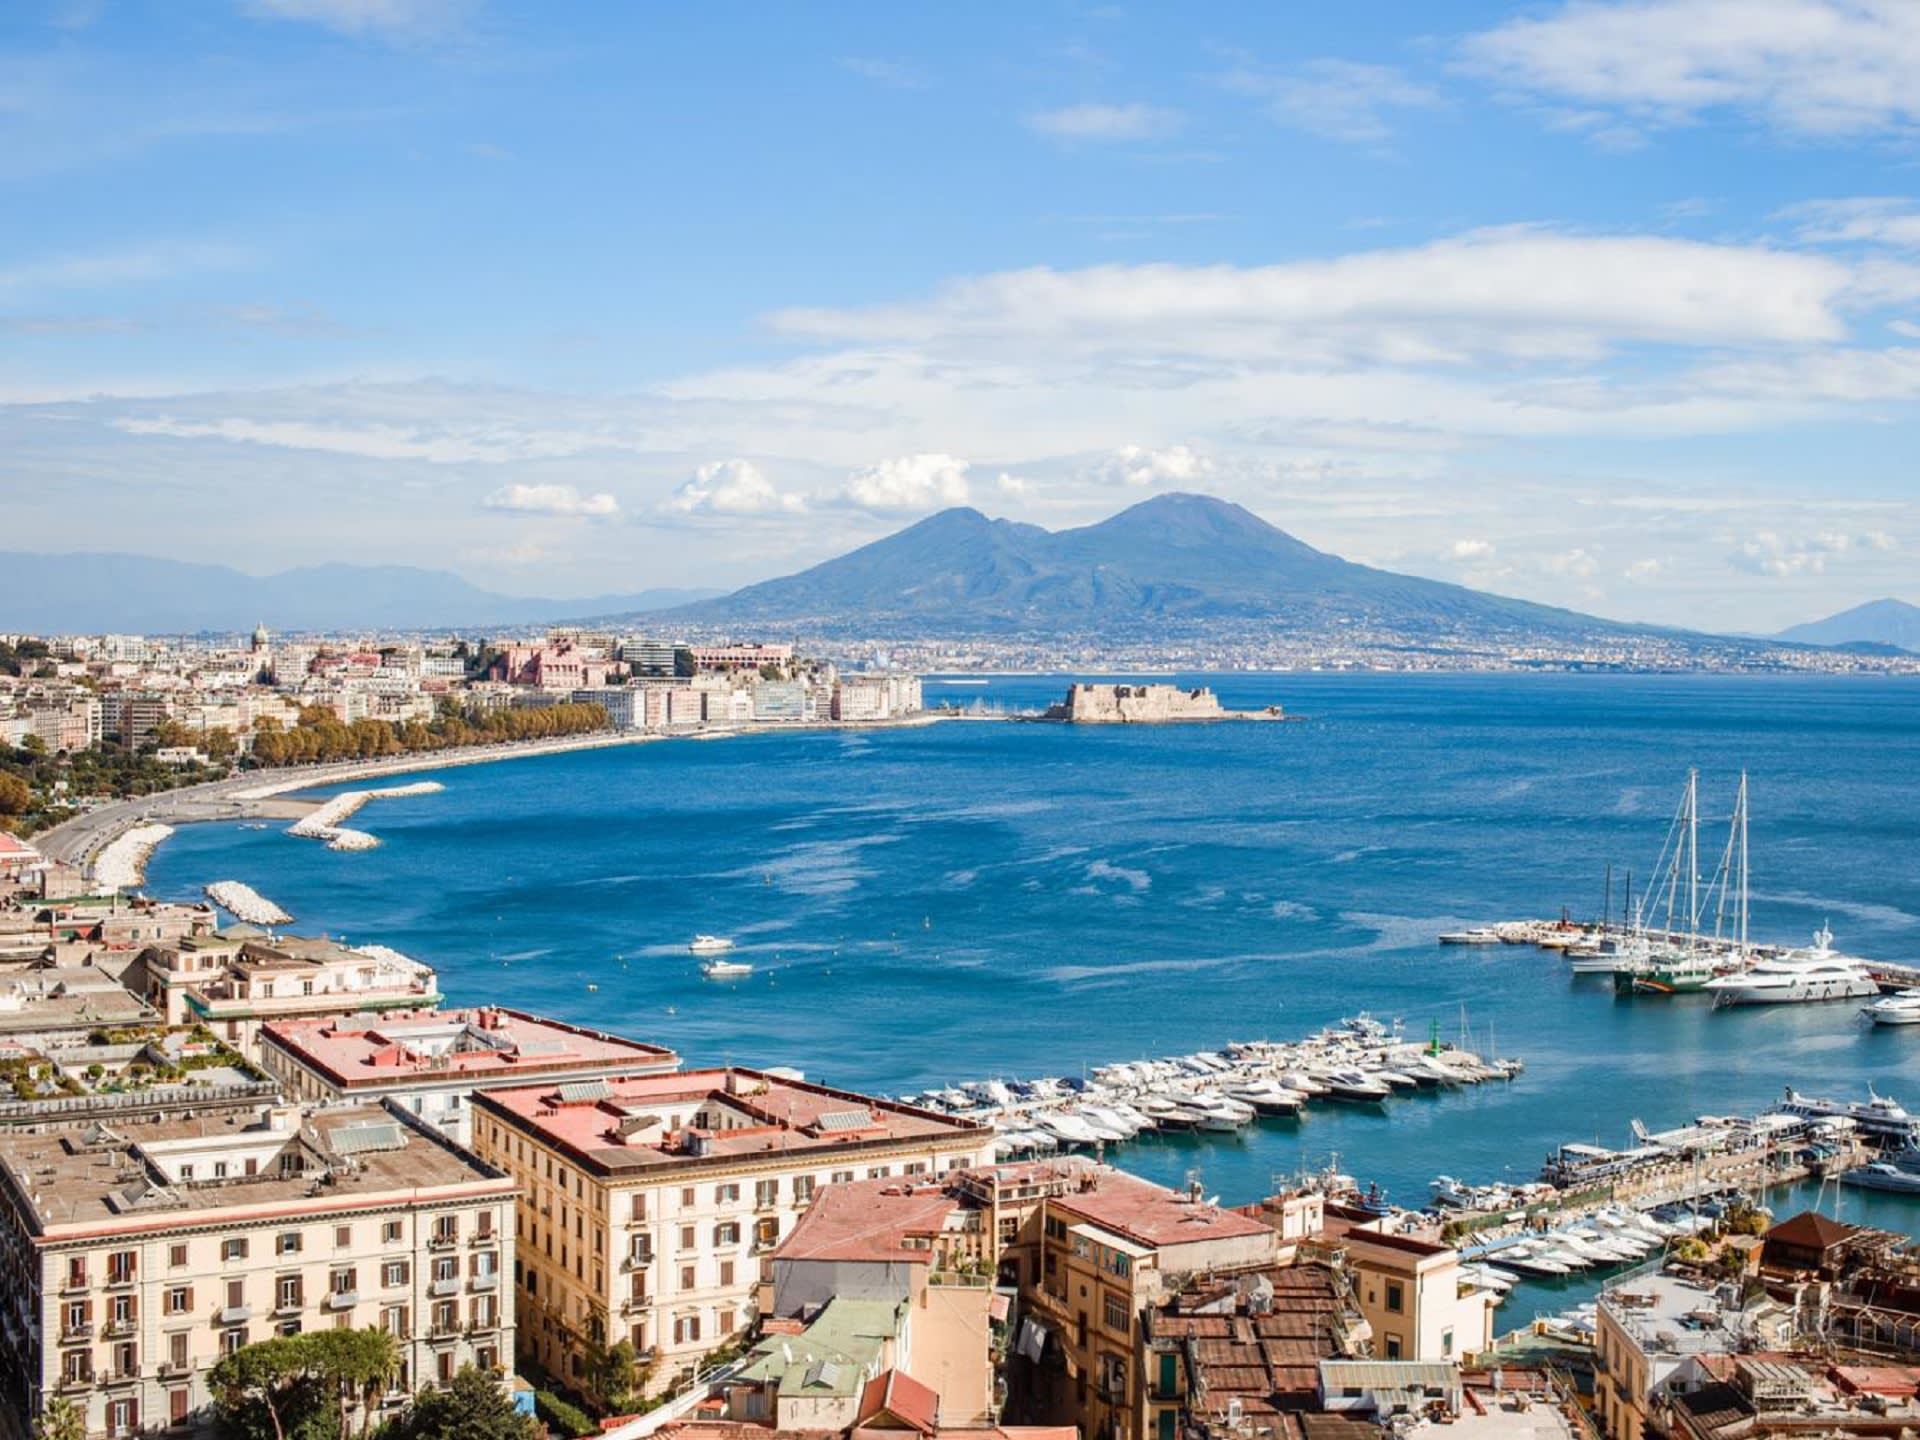 Naples, Pompeii and Mt.Vesuvius O Sole Mio